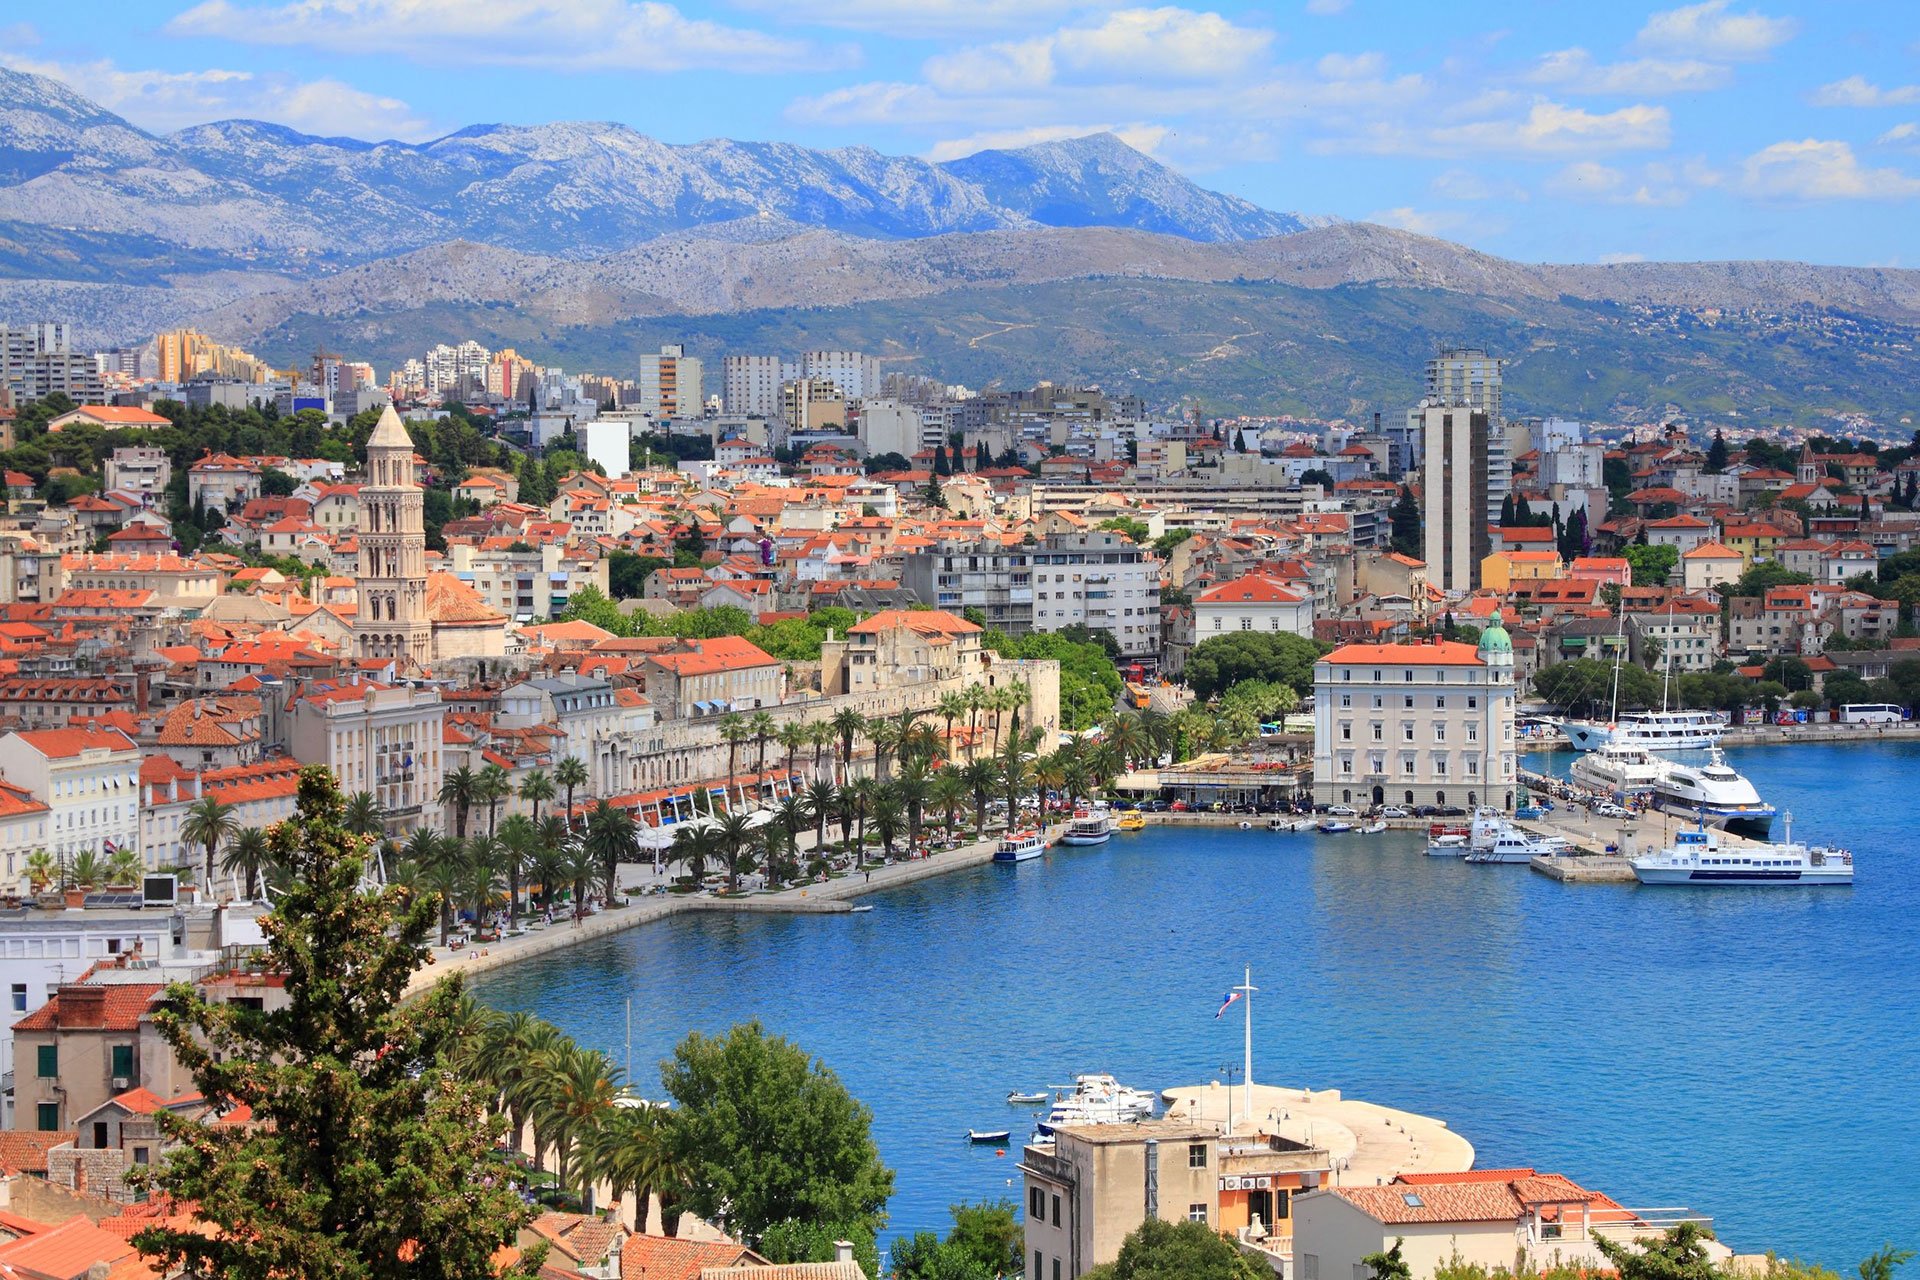 Ιστιοπλοΐα στην Κροατία: 7 Ημέρες Ταξίδι Απόλαυσης στην Αδριατική.